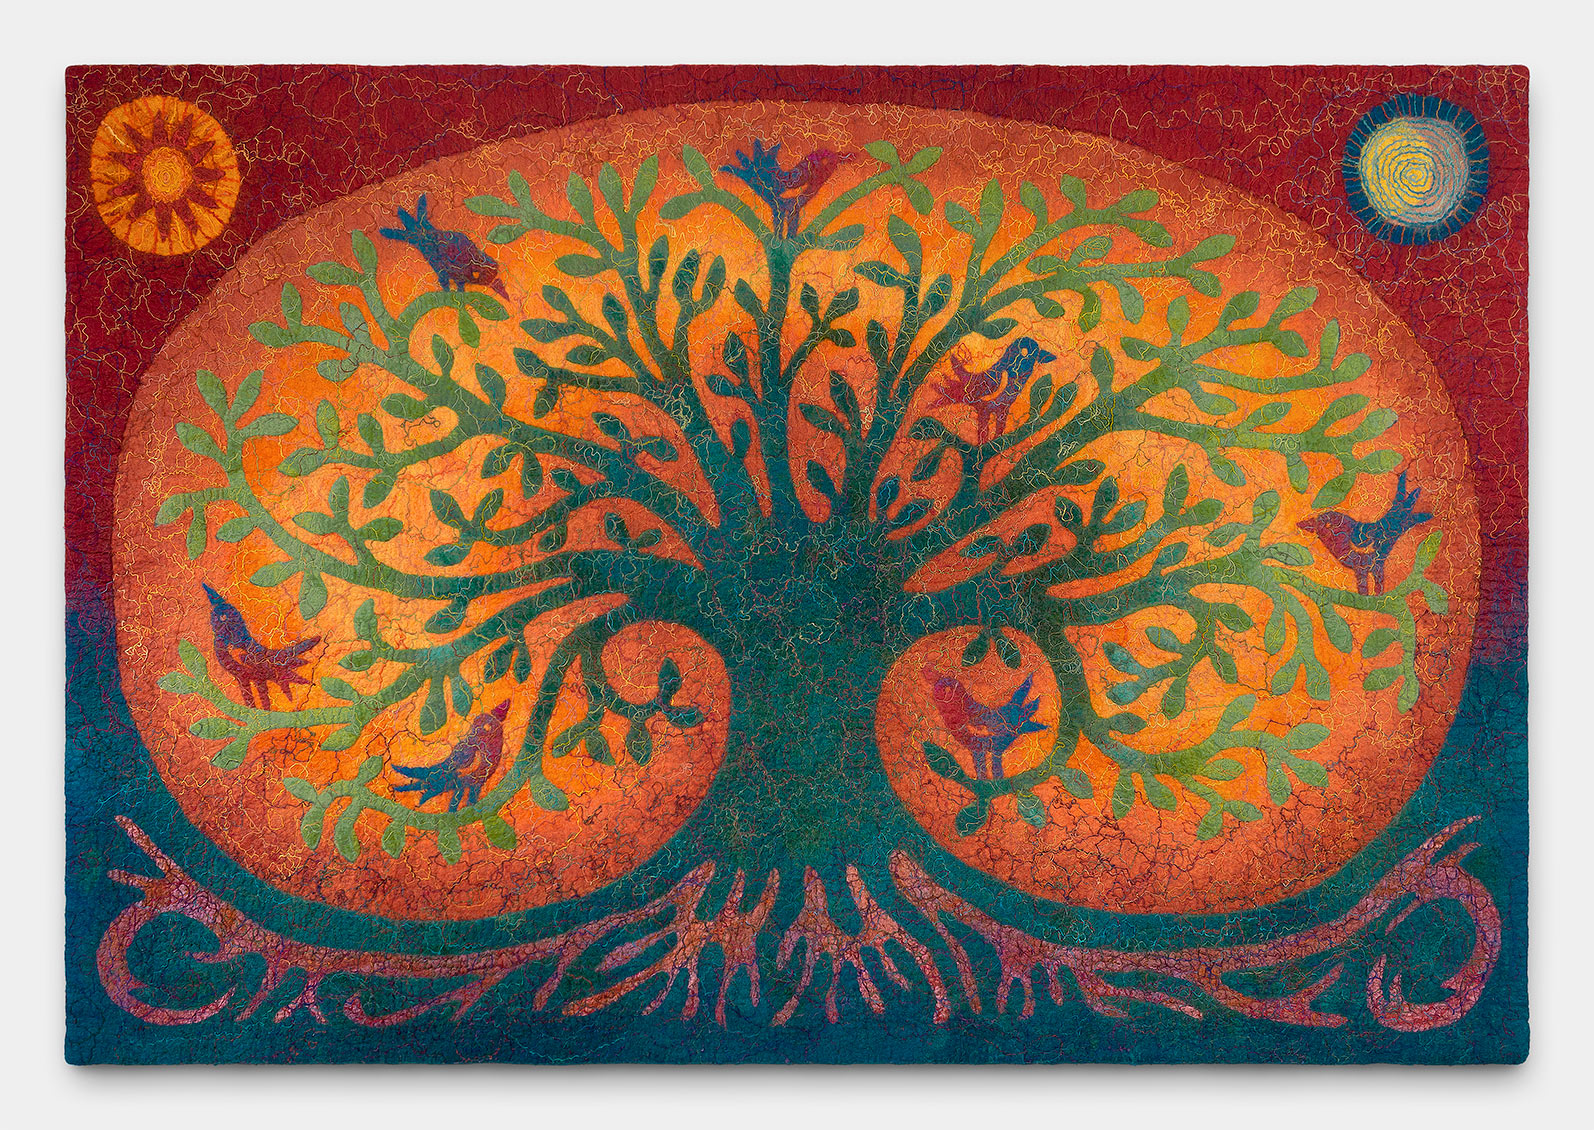 Lifetree with Seven Birds (version 1)<span style="font-size: 16px;">&nbsp&nbsp&nbsp|&nbsp&nbsp&nbsp</span><i>Életfa hét madárral (1. változat)</i>